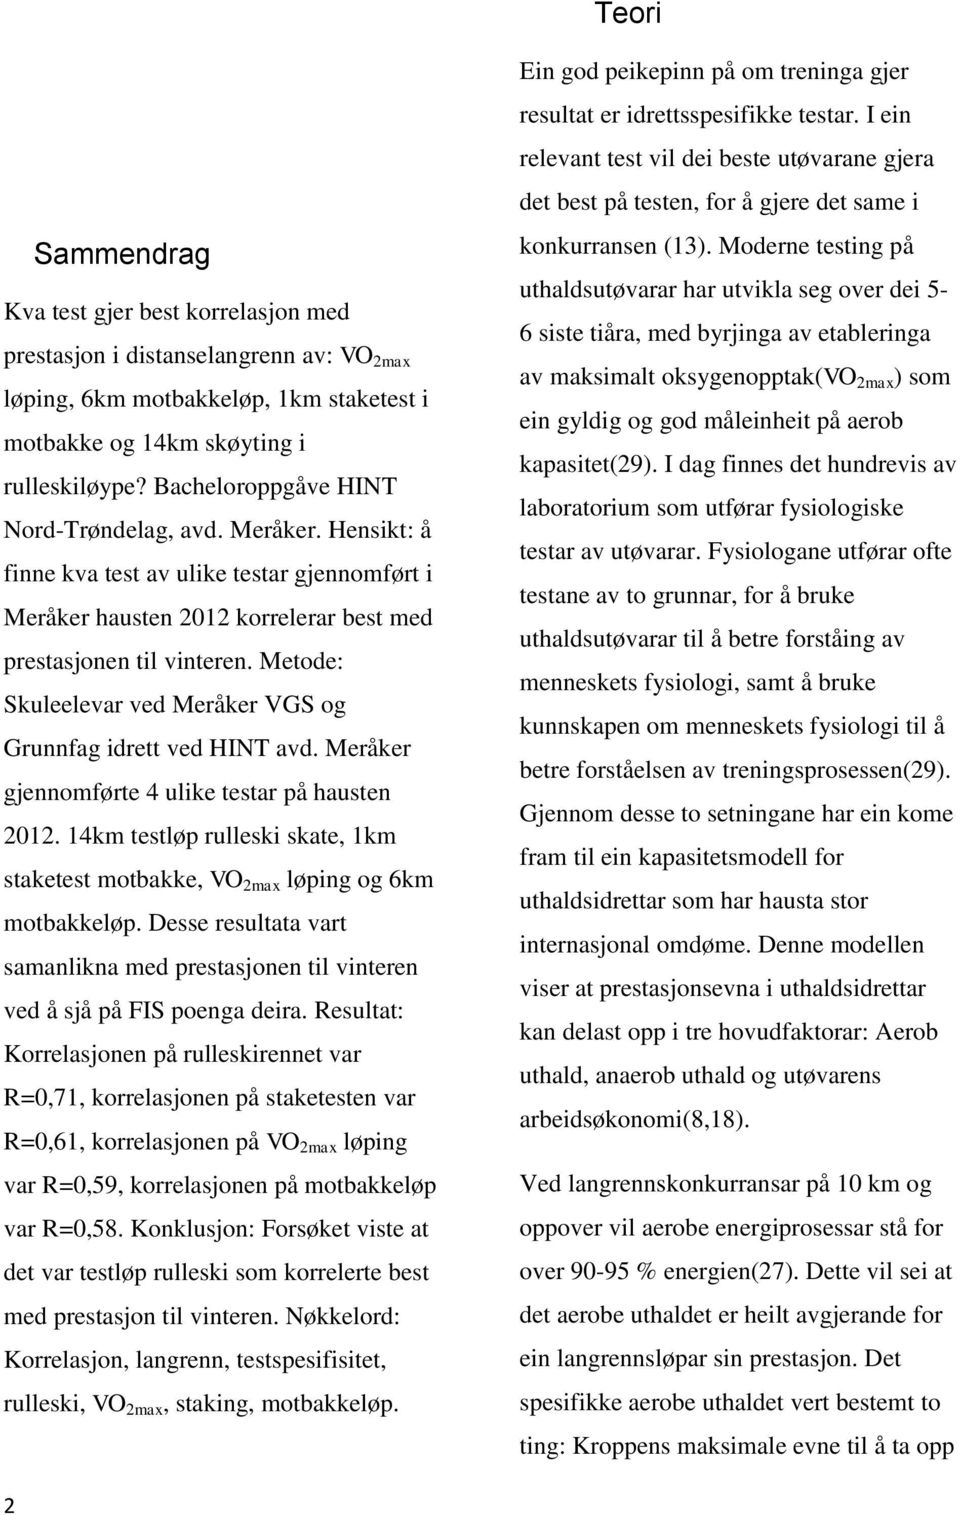 Metode: Skuleelevar ved Meråker VGS og Grunnfag idrett ved HINT avd. Meråker gjennomførte 4 ulike testar på hausten 2012.